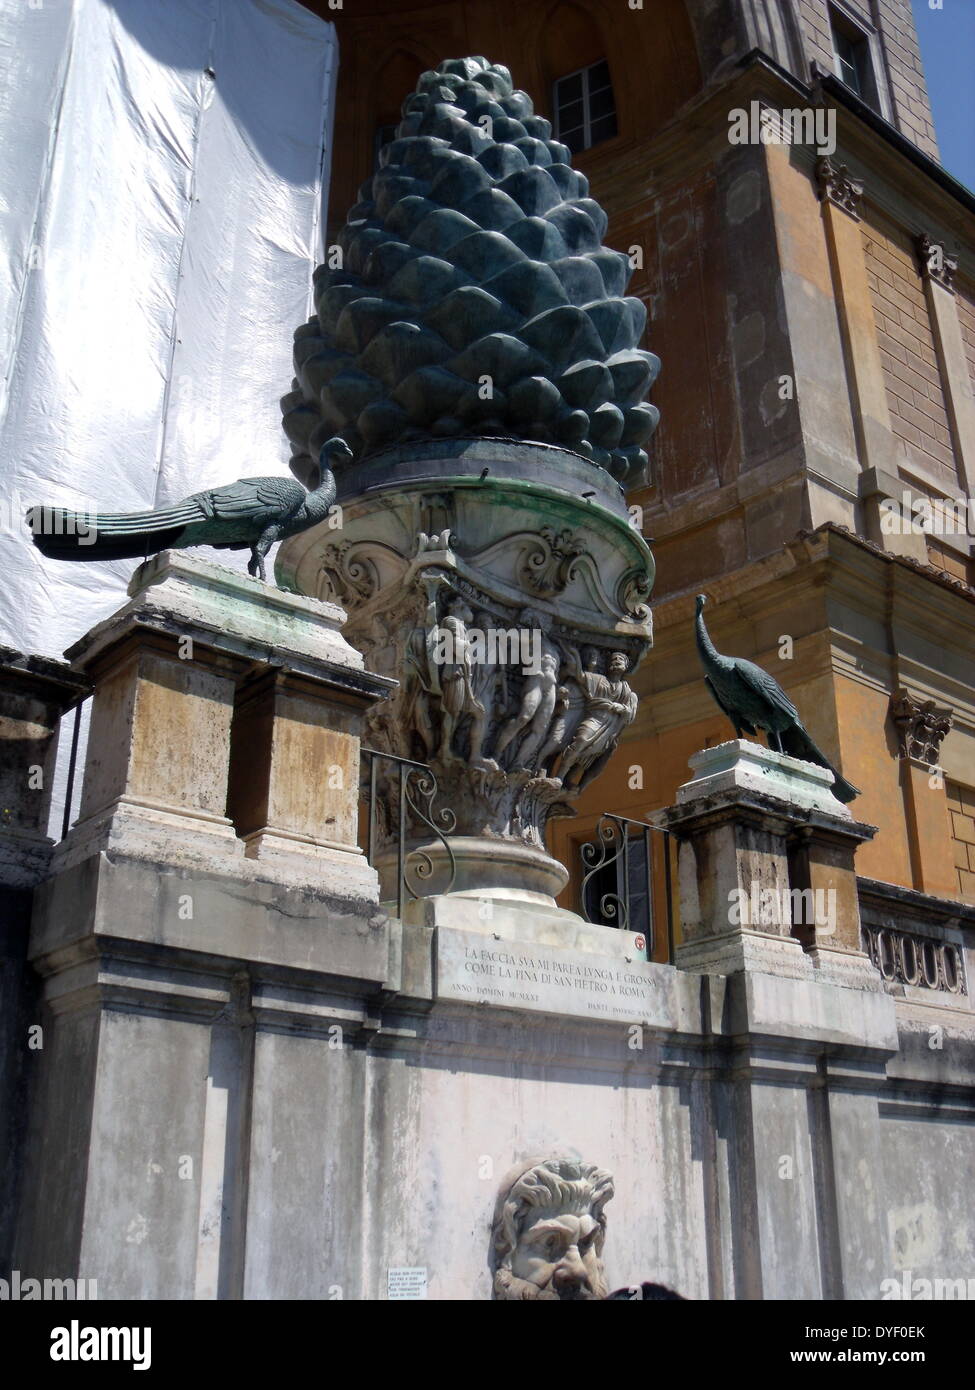 Detail aus der Vatikanischen Gärten, die großen weitläufigen städtischen Gärten, die mehr als die Hälfte der Vatikan Gebiet (rund 23 Hektar). Die Gärten sind mit Skulpturen, Reliefs und Springbrunnen dekoriert. Dieses Bild zeigt eine der vielen Skulpturen. Stockfoto